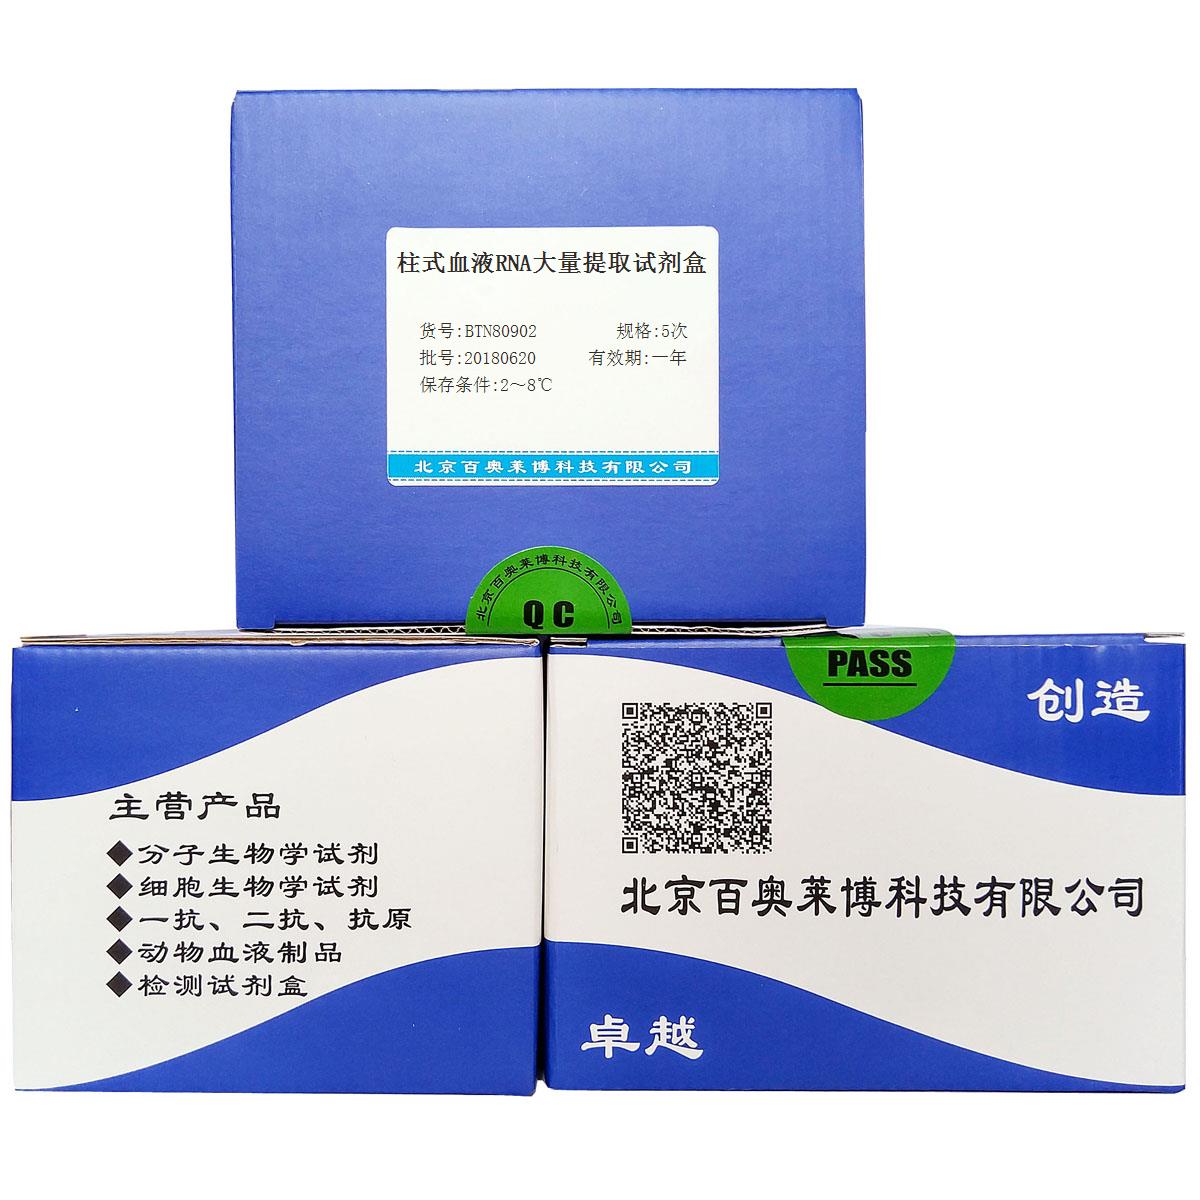 北京现货BTN80902型柱式血液RNA大量提取试剂盒特价优惠